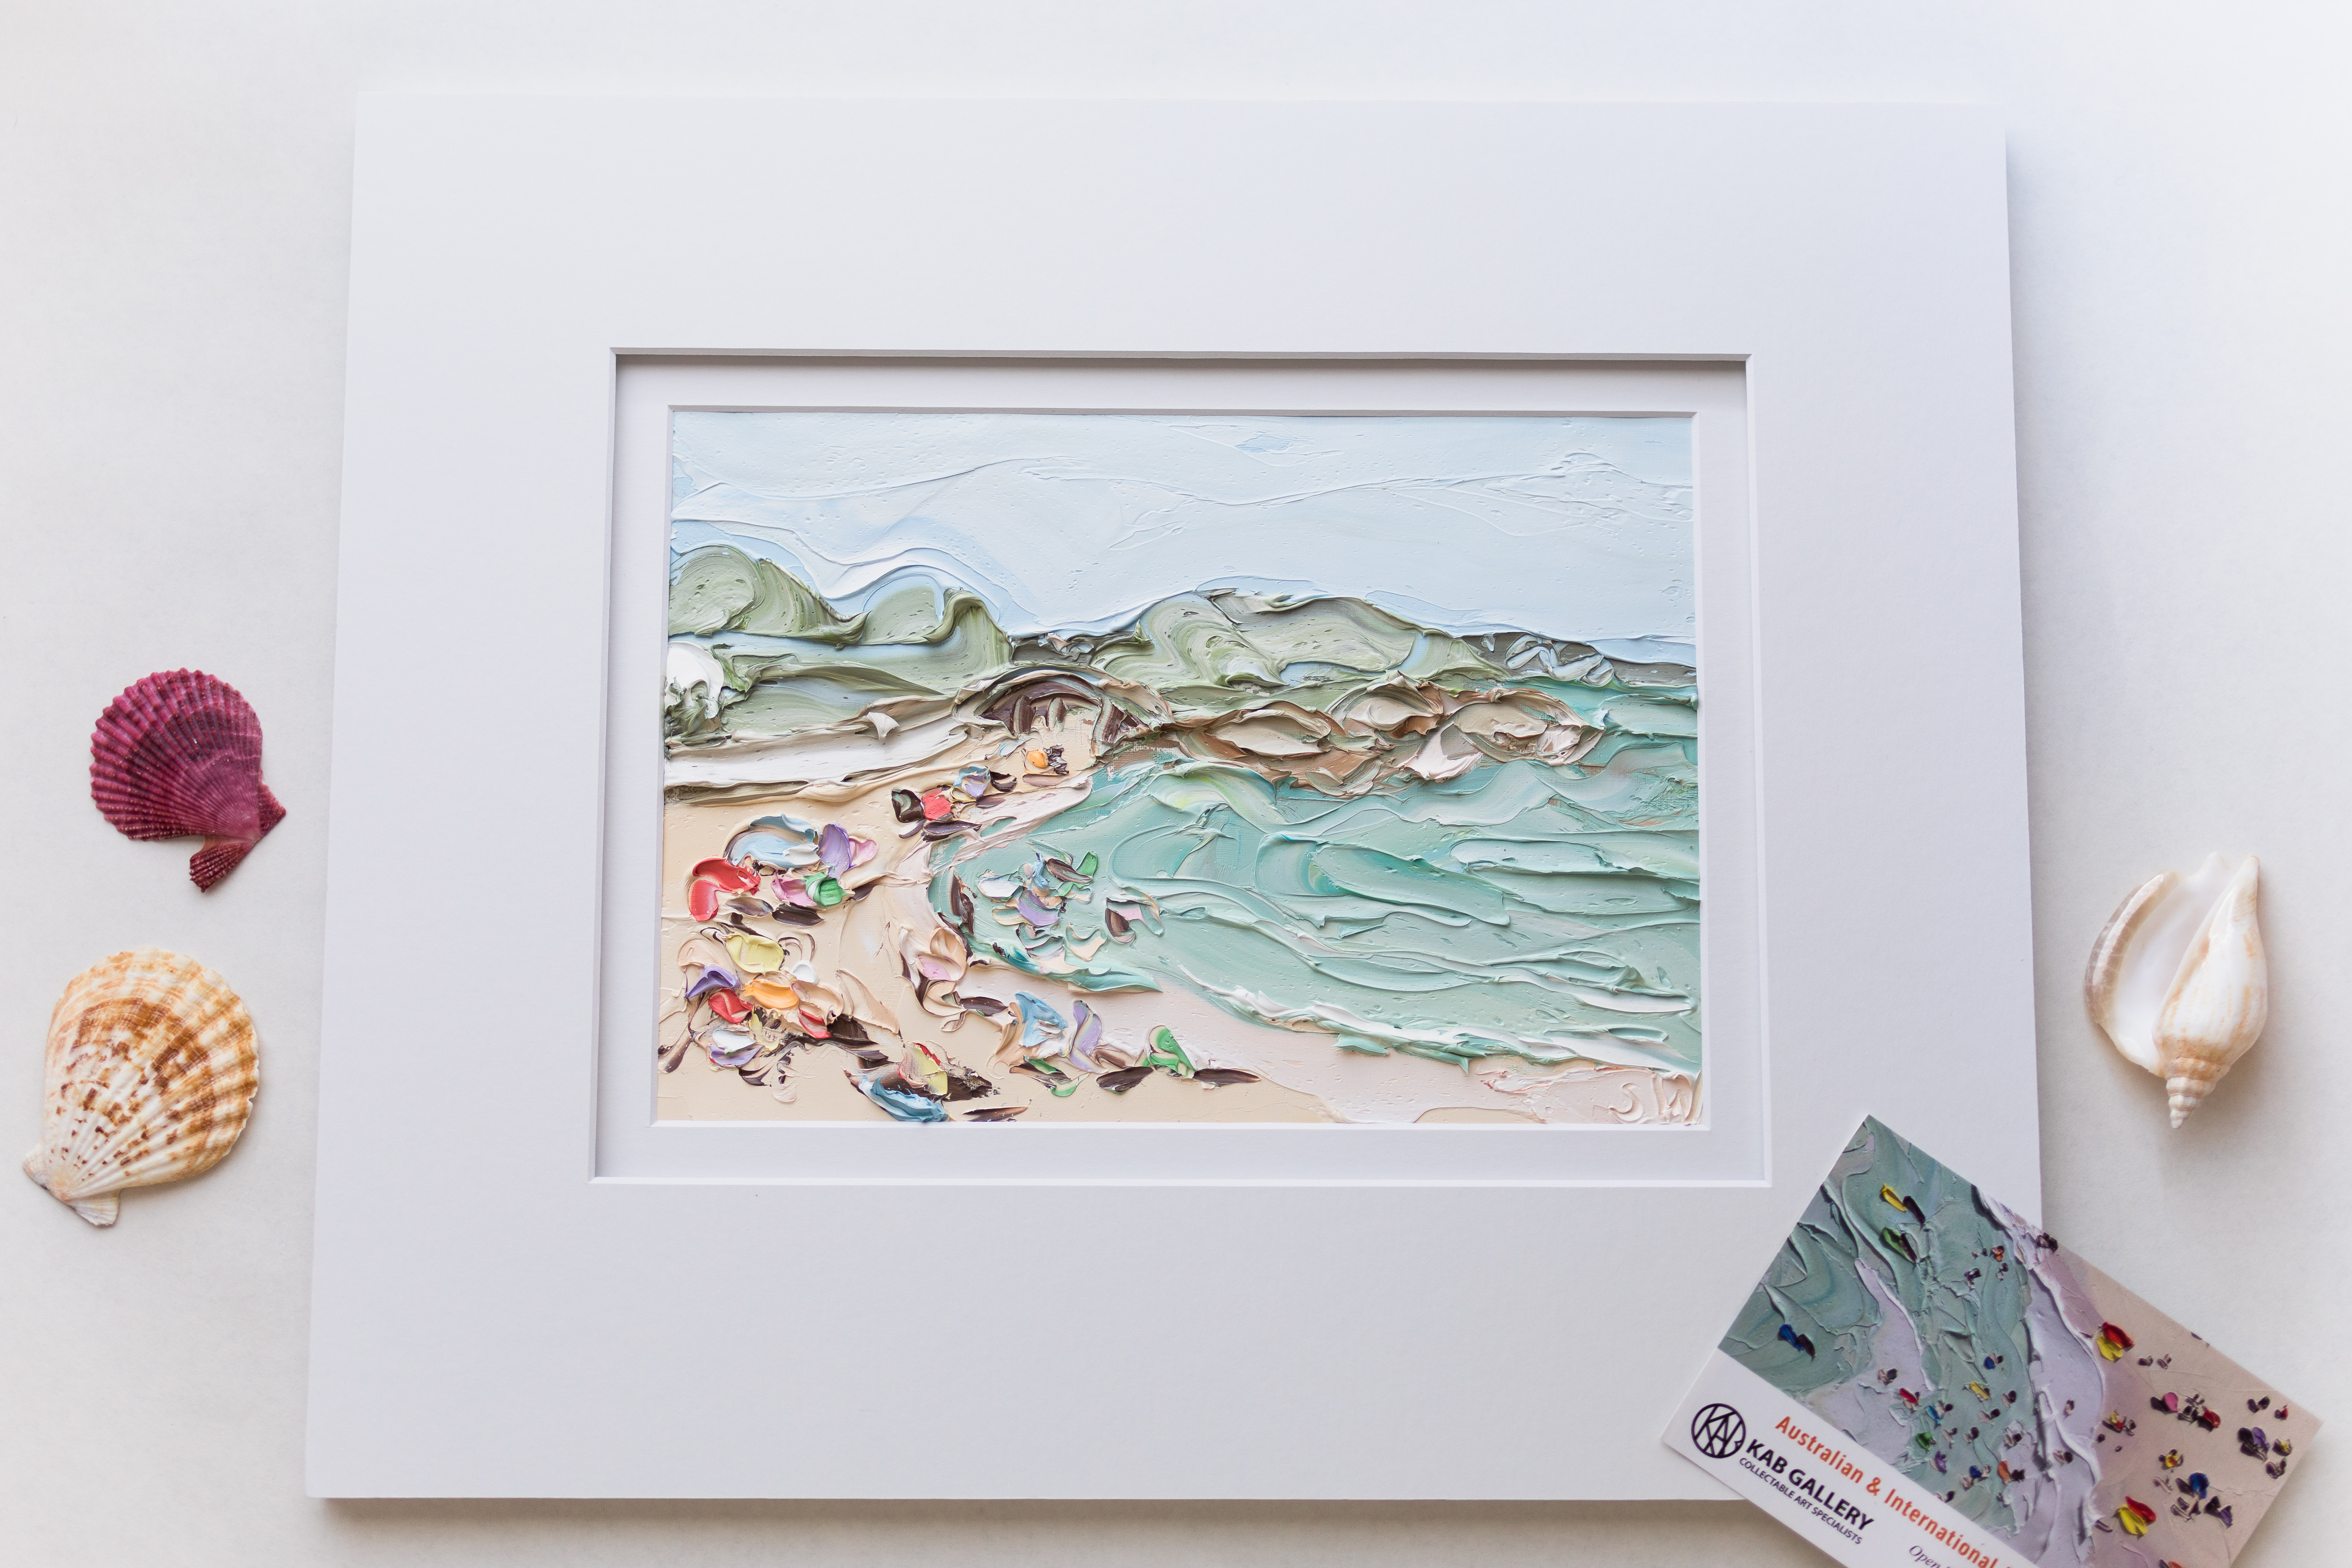 Sally West painting of Sydney Beach - Balmoral beach